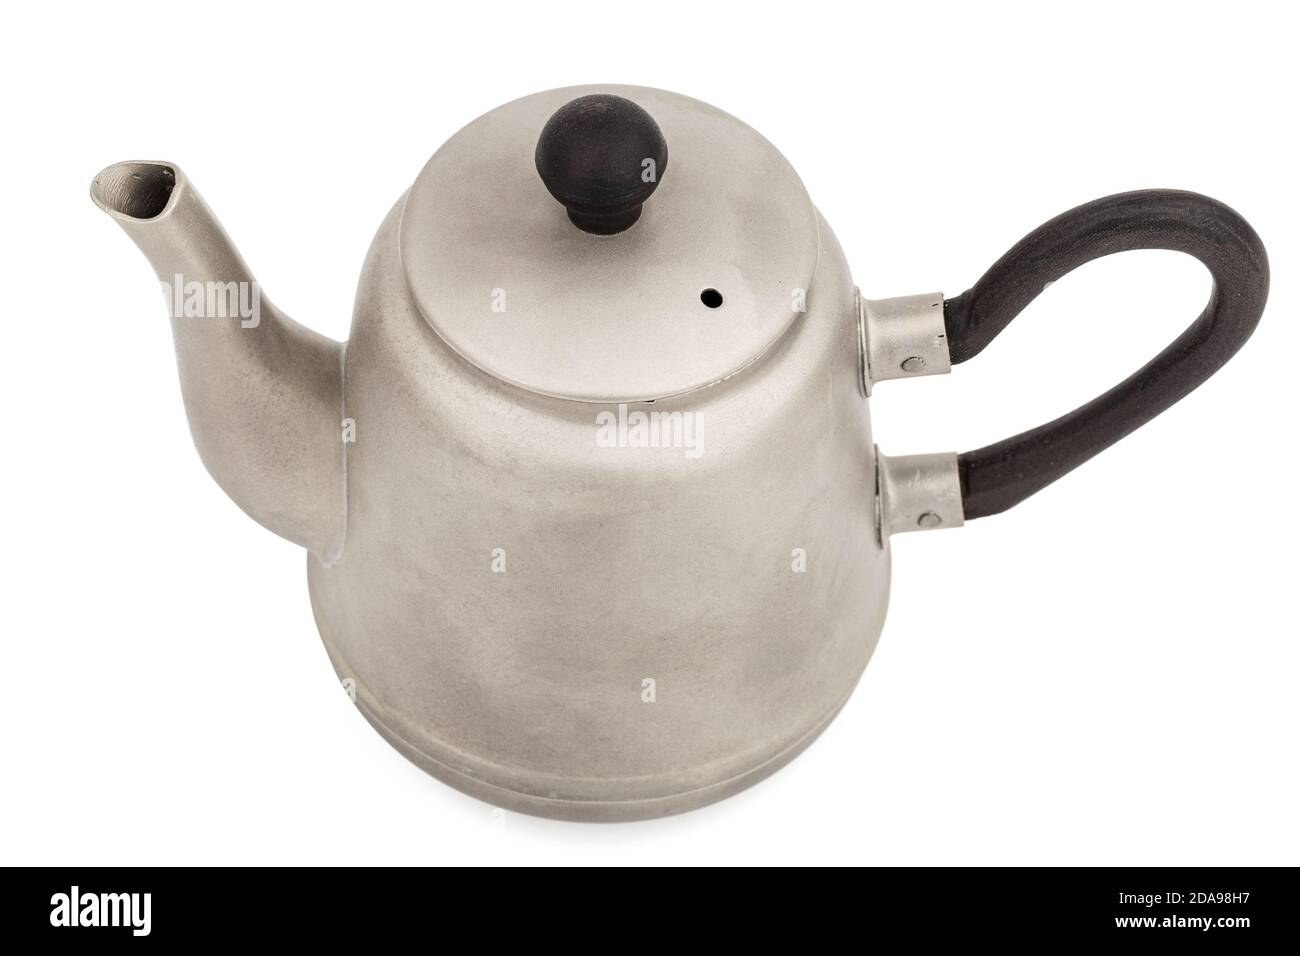 https://c8.alamy.com/comp/2DA98H7/antique-metal-teapot-antique-kettle-silver-teapot-metal-teapot-isolated-on-white-background-2DA98H7.jpg